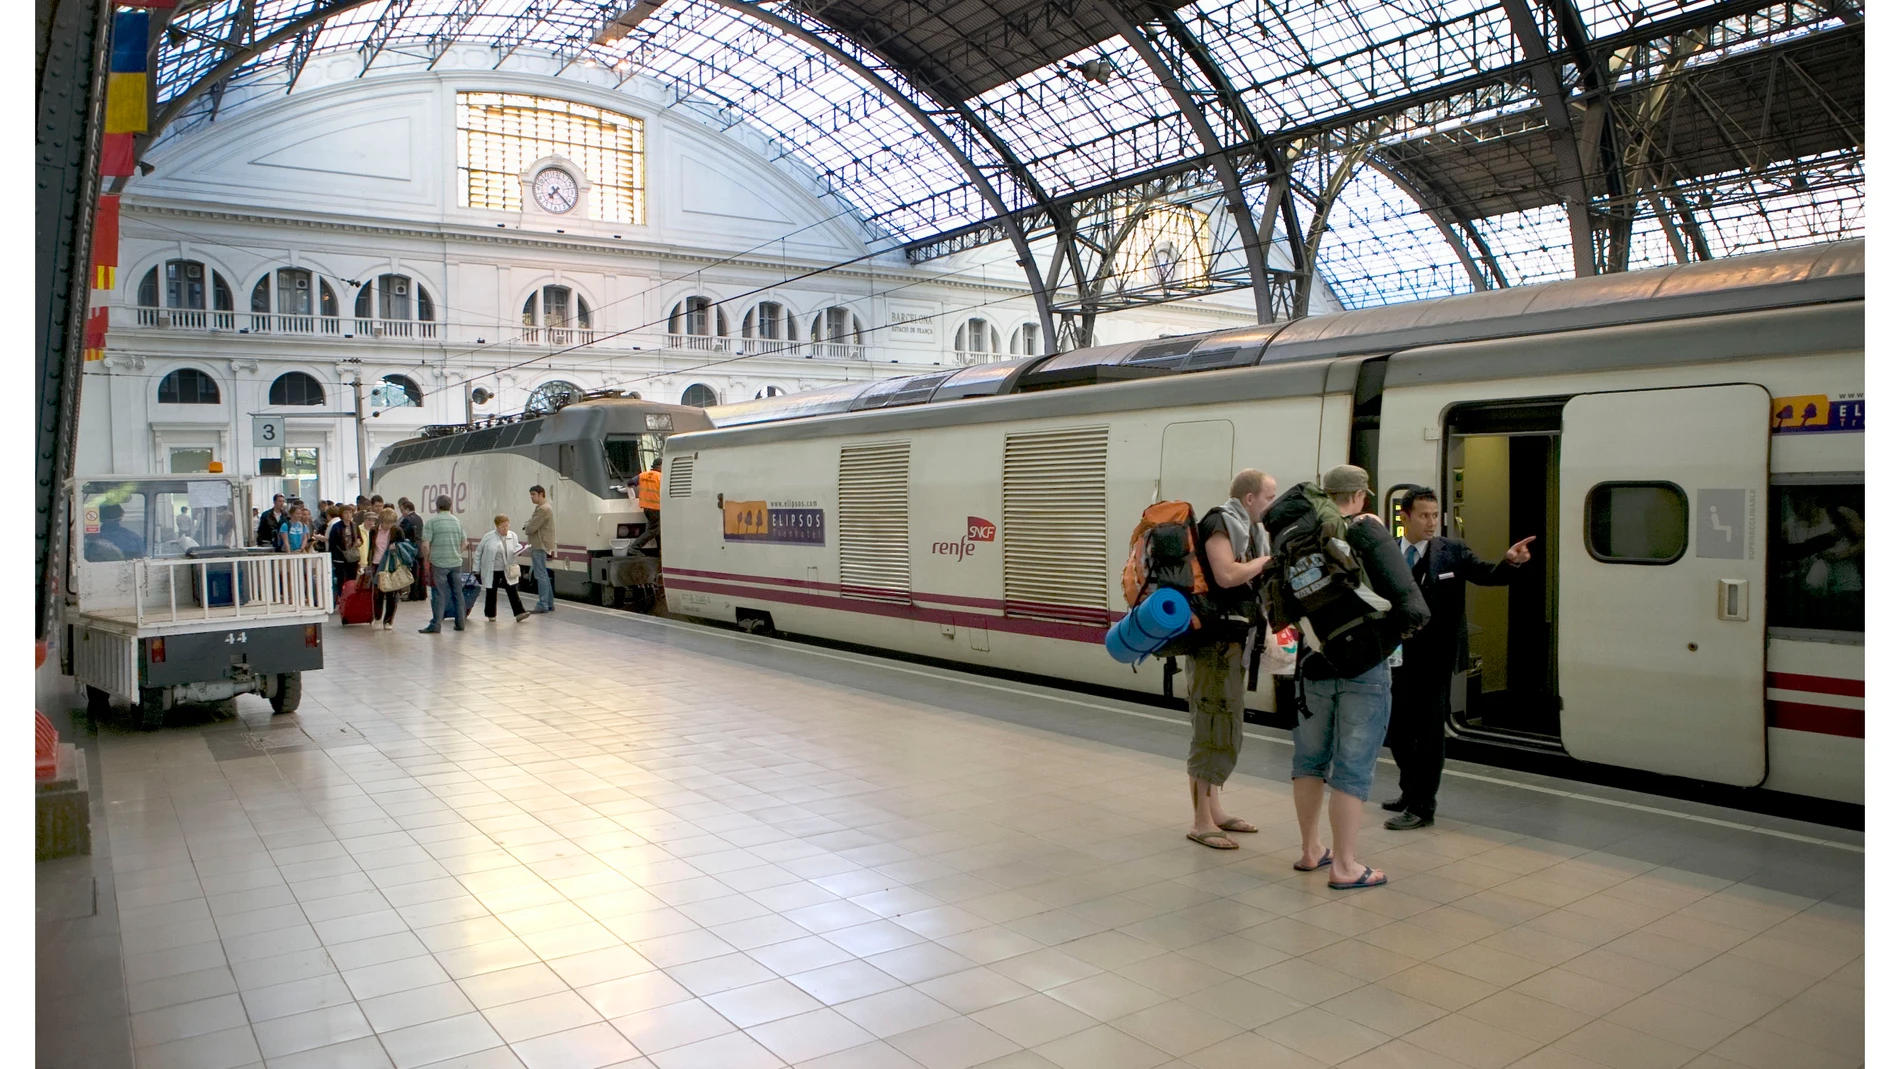 VÍDEO: El Gobierno aprueba un descuento del 50% del Interrail europeo y del 90% en España para los jóvenes este verano